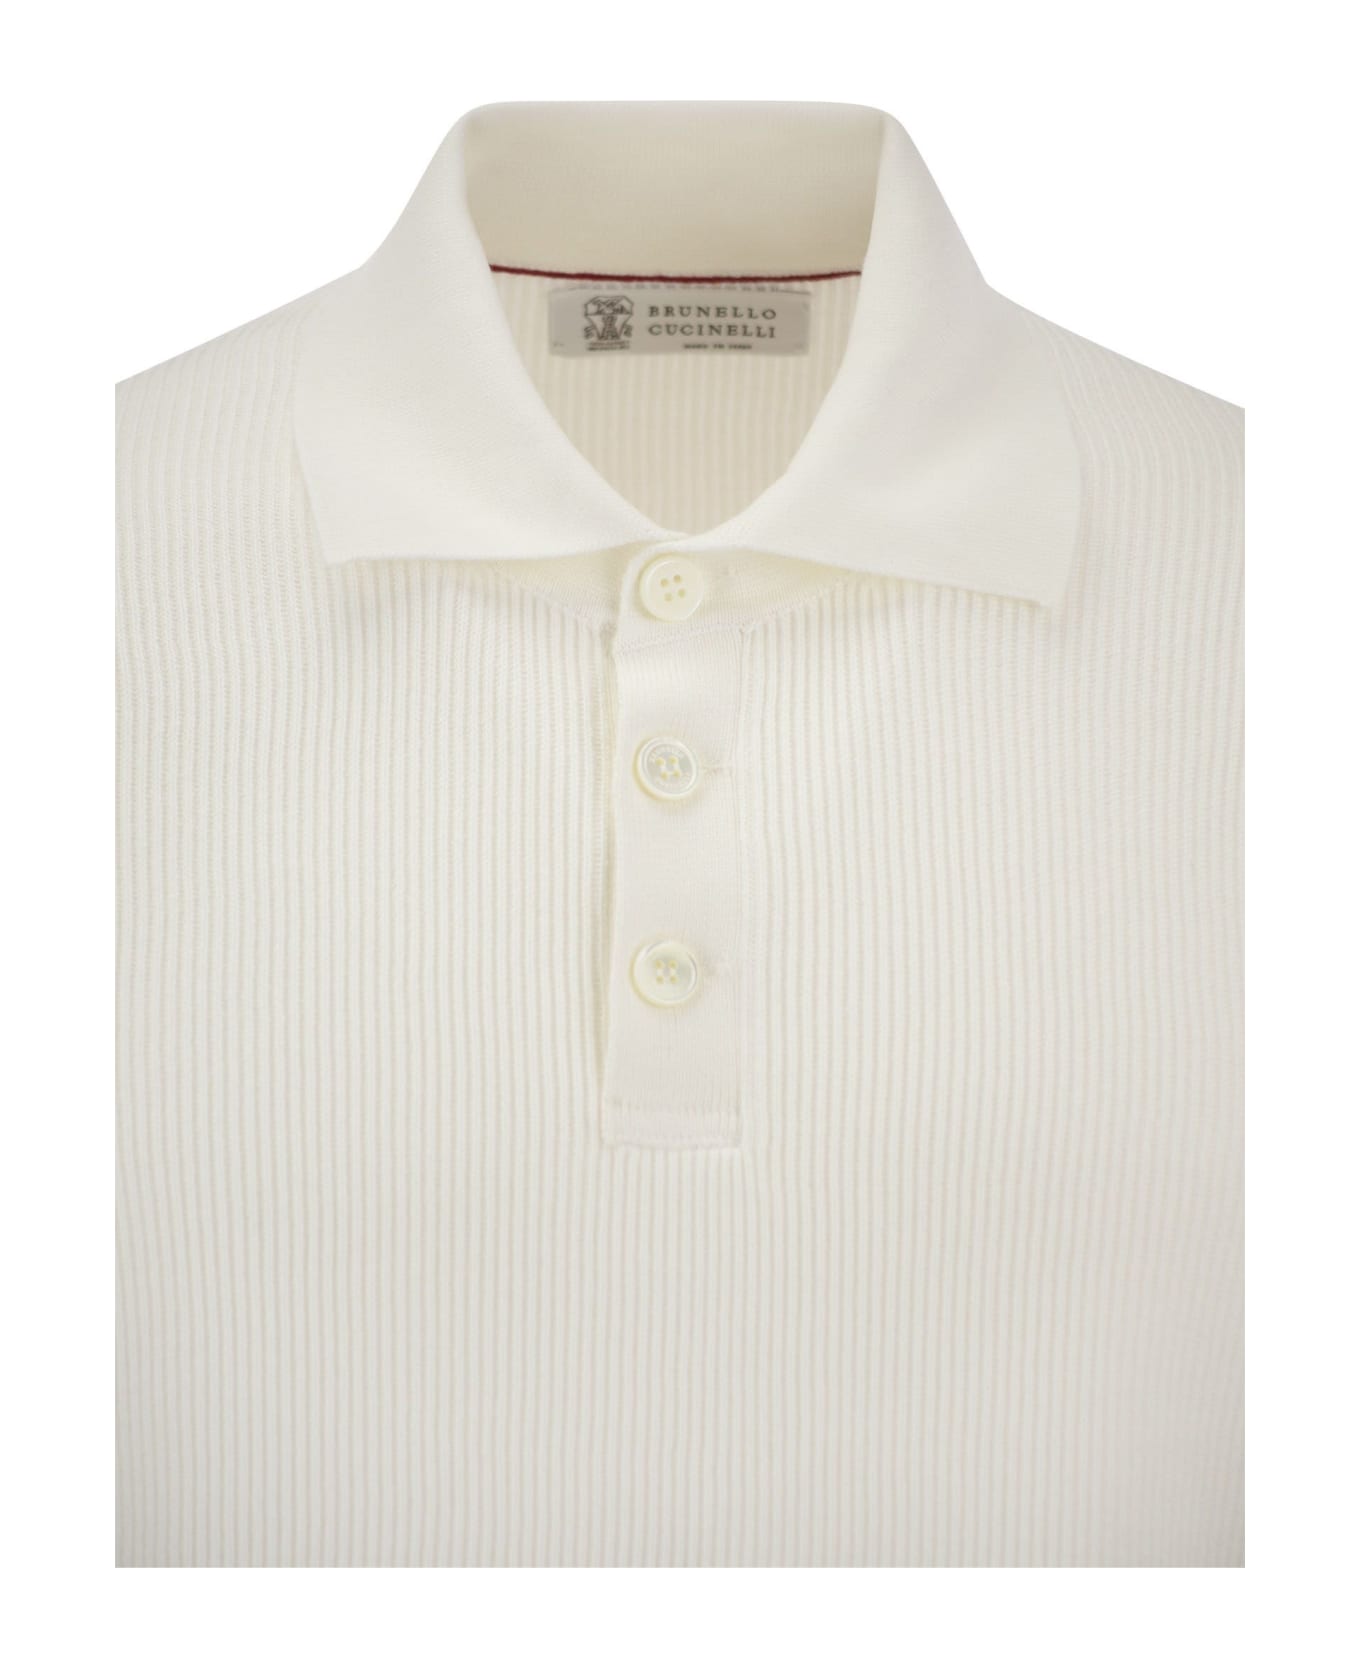 Brunello Cucinelli Cotton Polo-style Jersey - White ポロシャツ